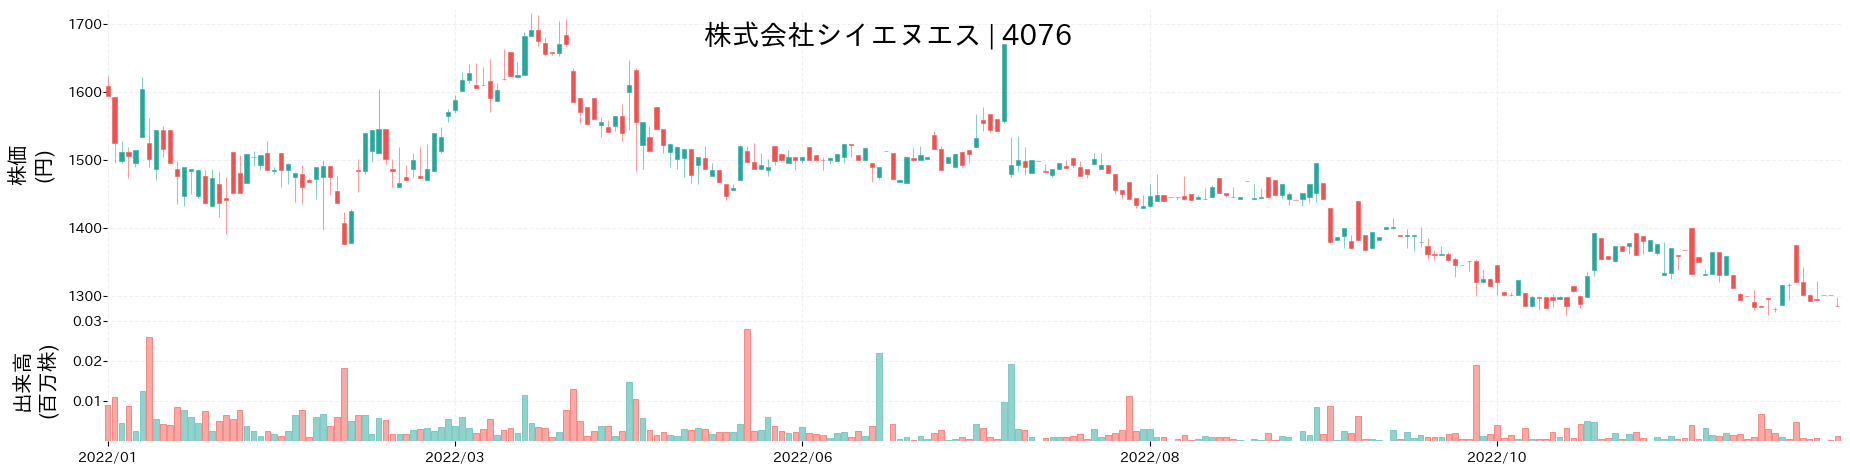 シイエヌエスの株価推移(2022)